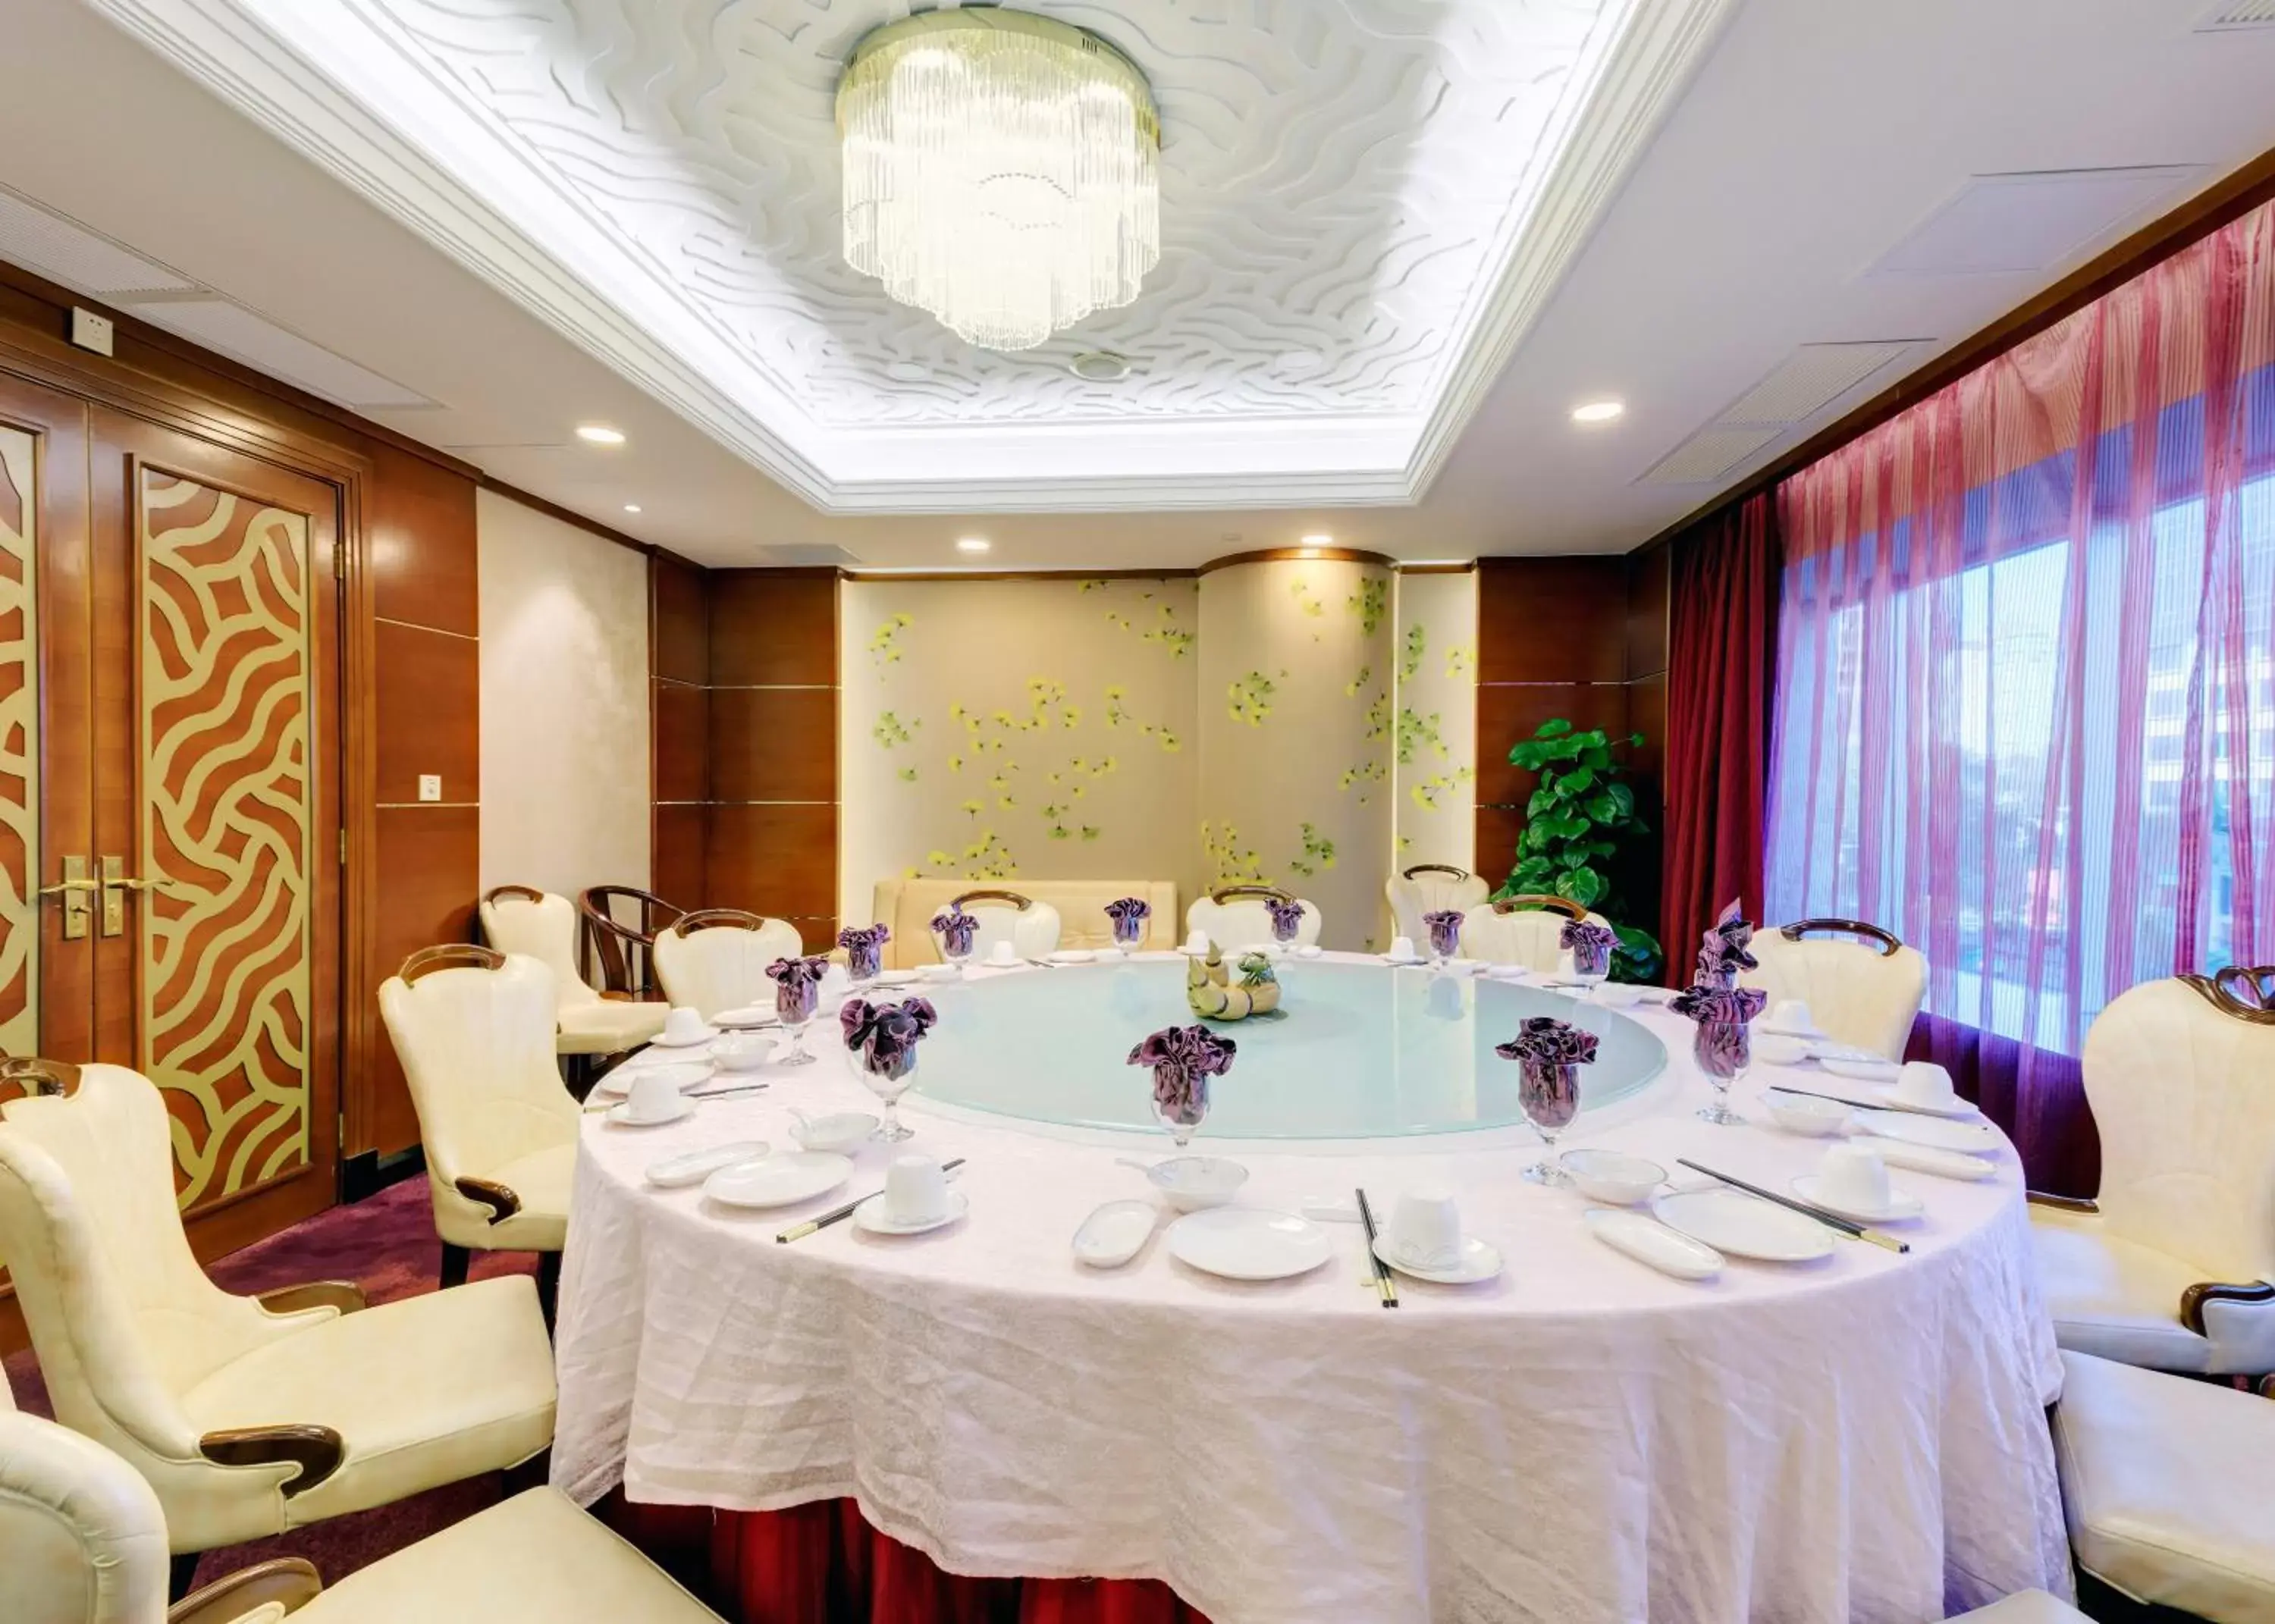 Banquet/Function facilities, Banquet Facilities in Ocean Hotel